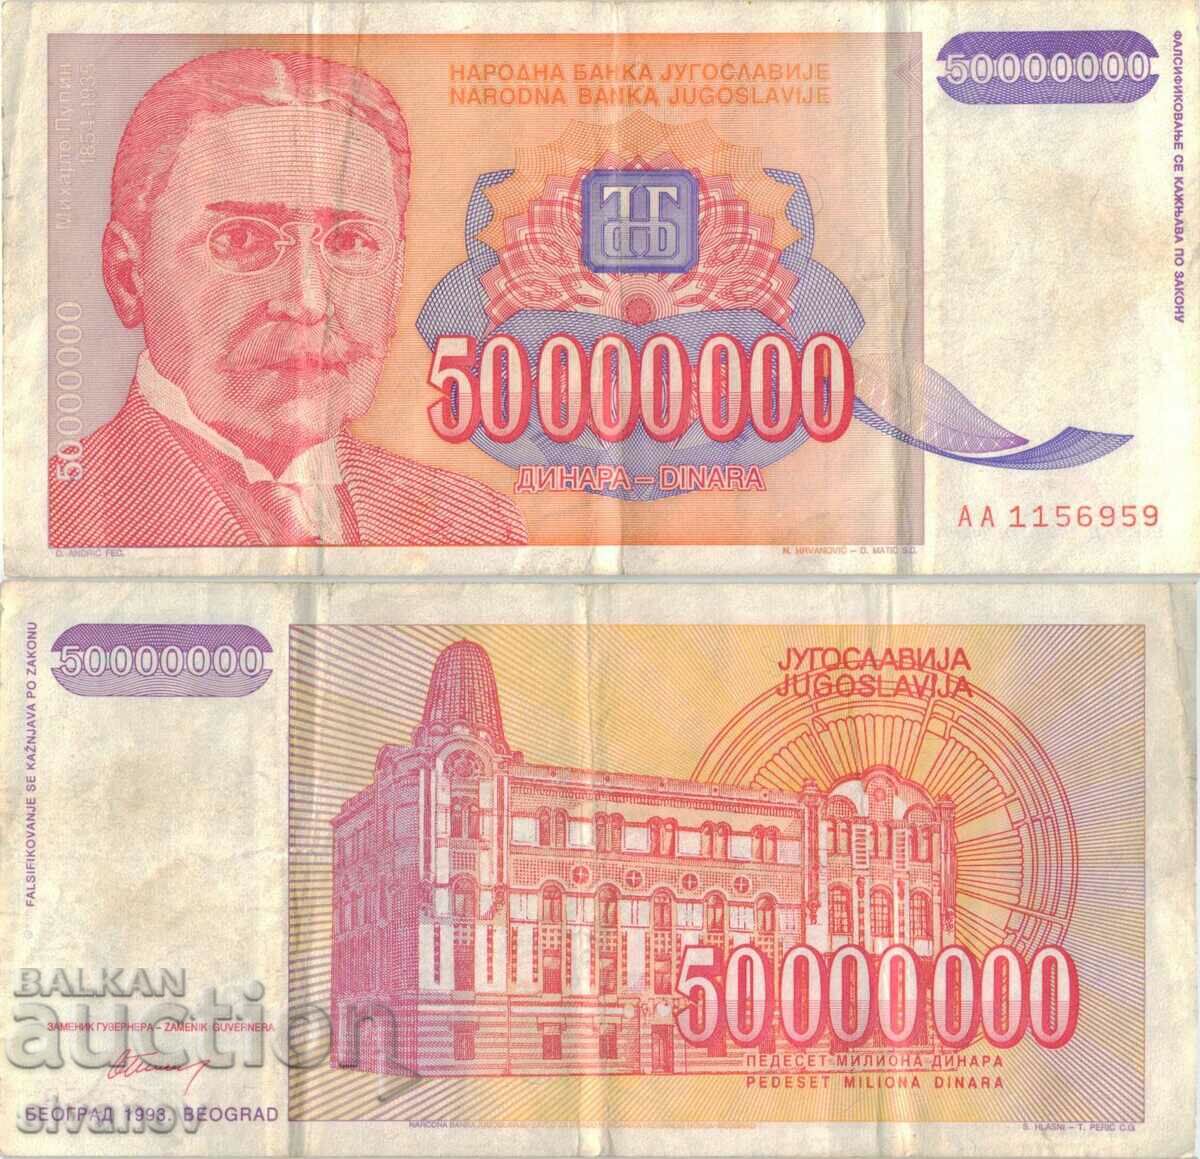 Yugoslavia 50,000,000 dinars 1993 #5070